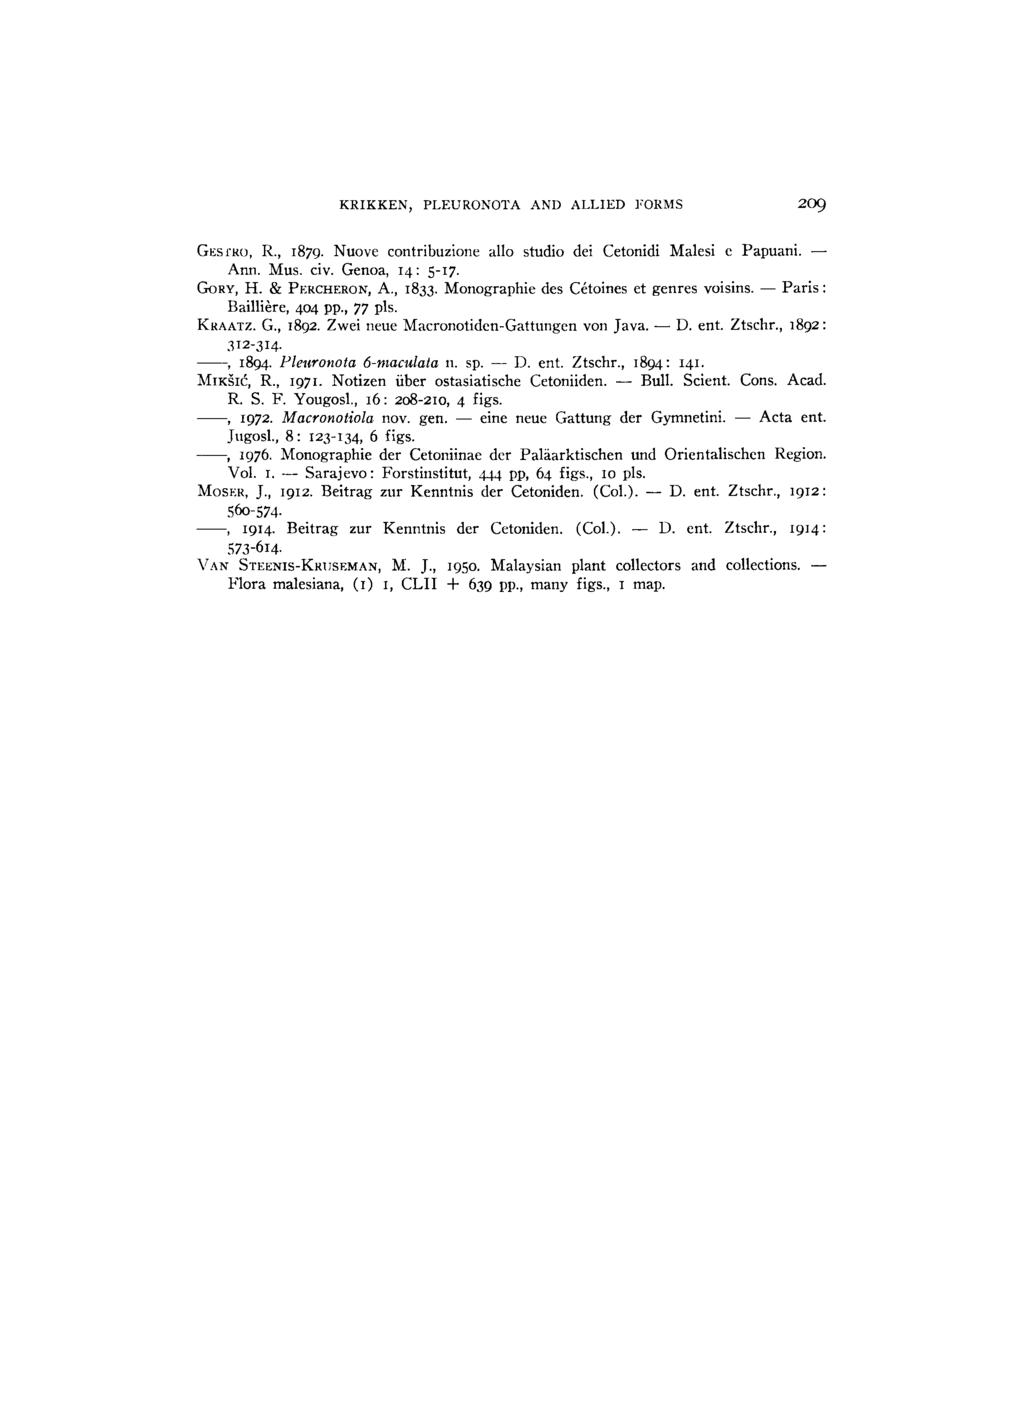 KRIKKEN, PLEURONOTA AND ALLIED FORMS 209 GESTRO, Κ., 1879. Nuove contribuzione allo studio dei Cetonidi Malesi e Papuani. Ann. Mus. civ. Genoa, 14: 5 17. GORY, H. & PERCHERON, Α., 1833.